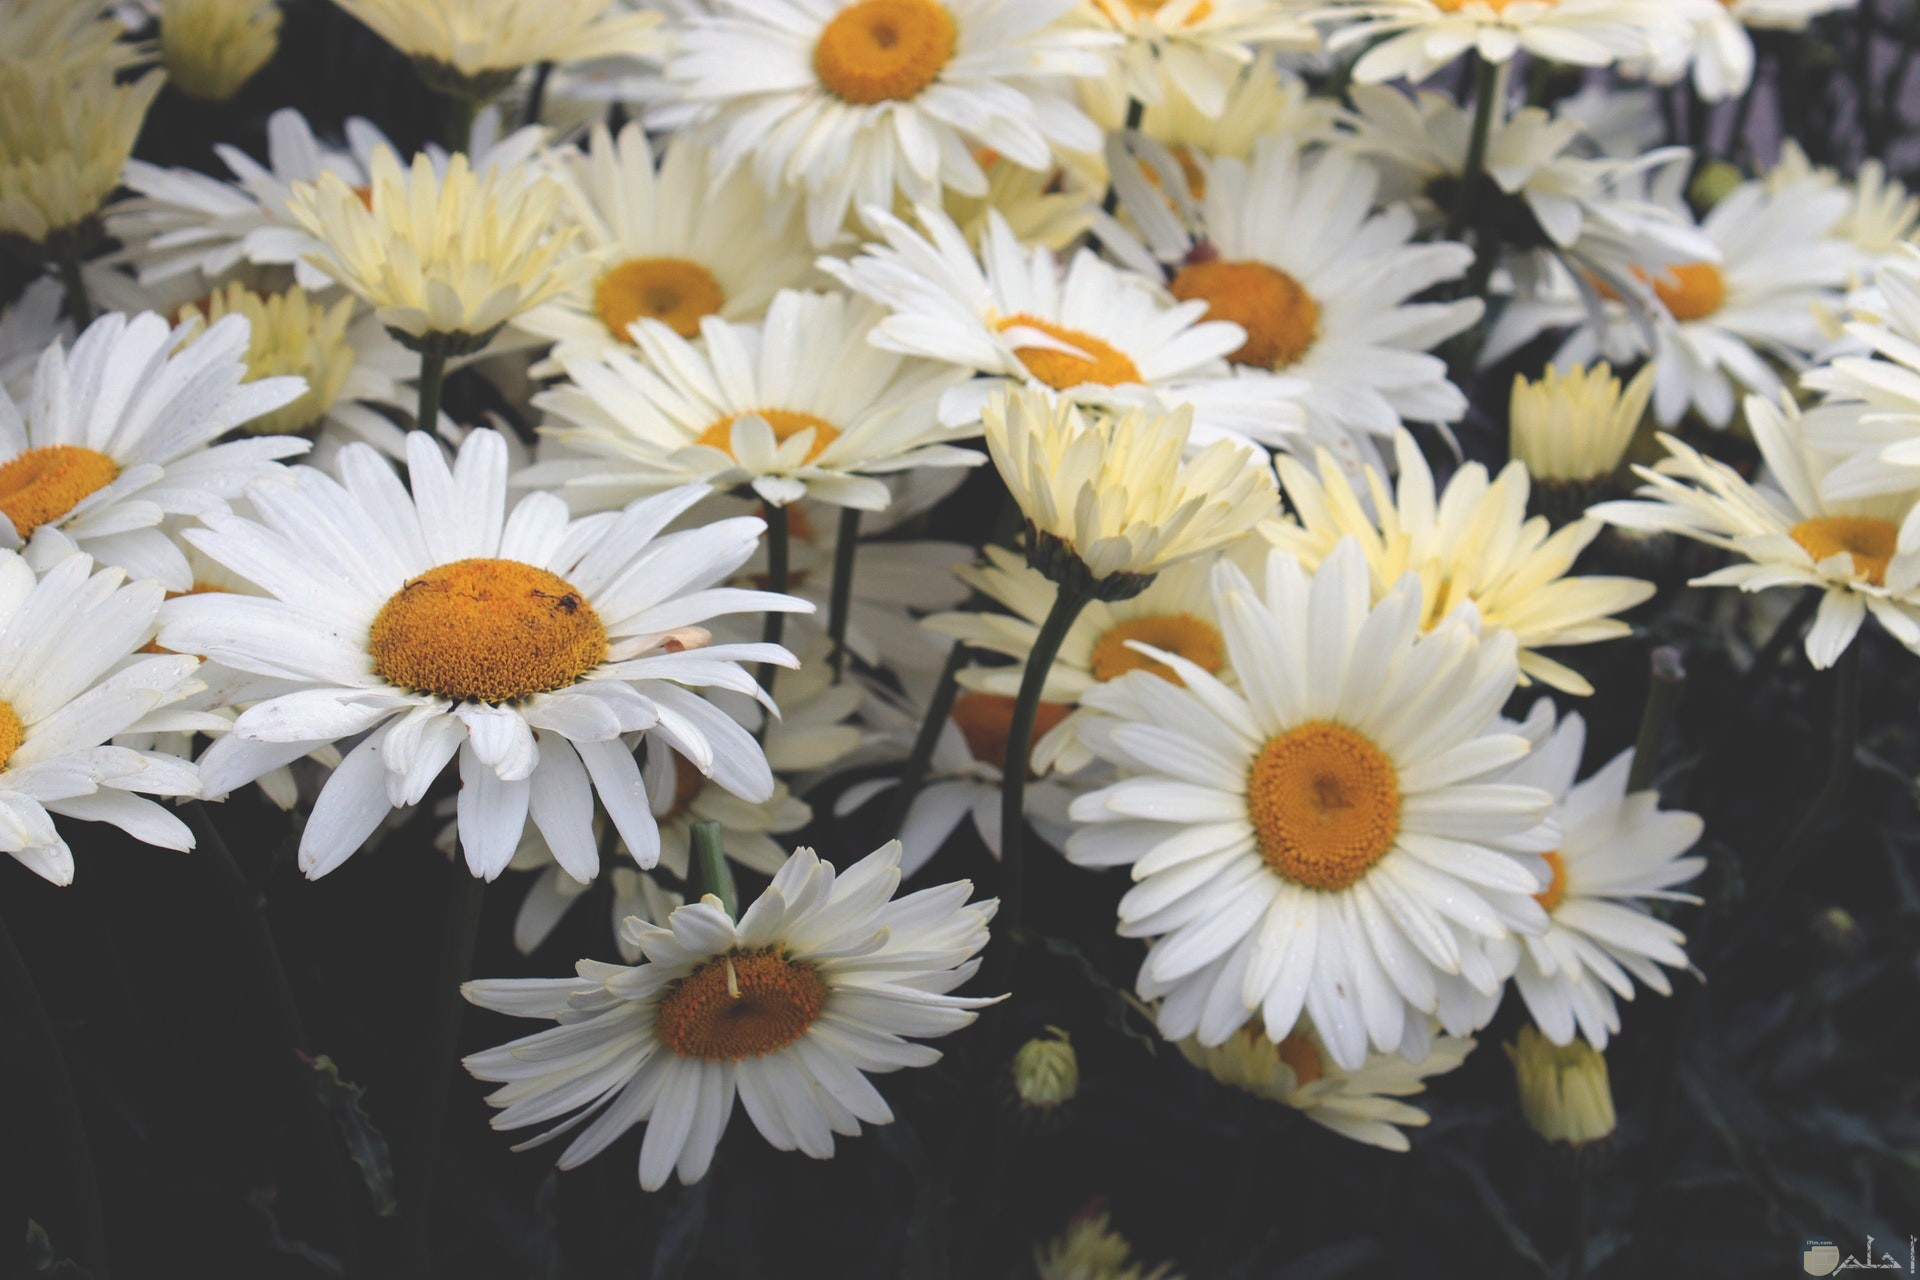 صورة مميزة لمجموعة من الورود البيضاء الجميلة بالحديقة